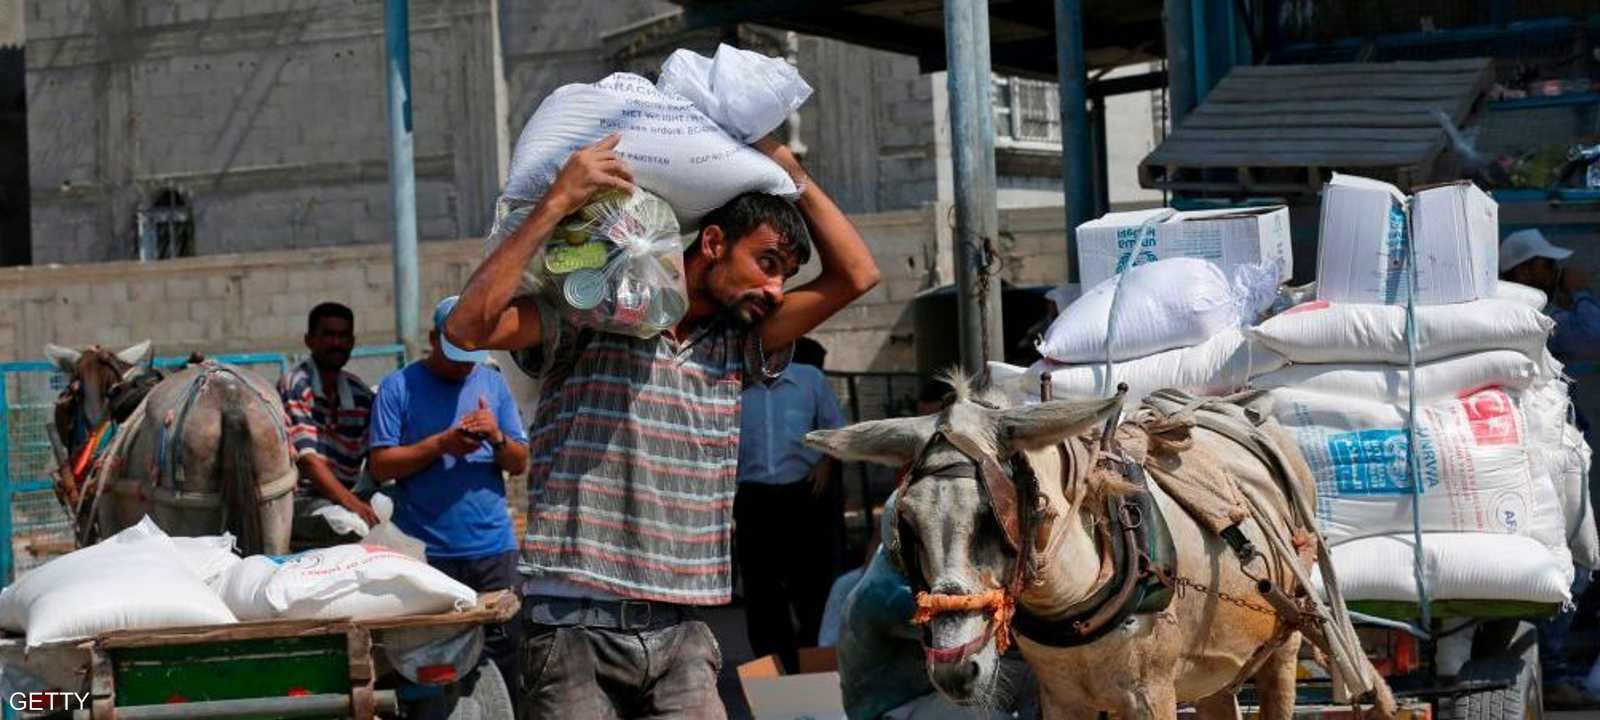 رجل فلسطيني يحمل كيسا من الدقيق خارج مركز توزيع المساعدات